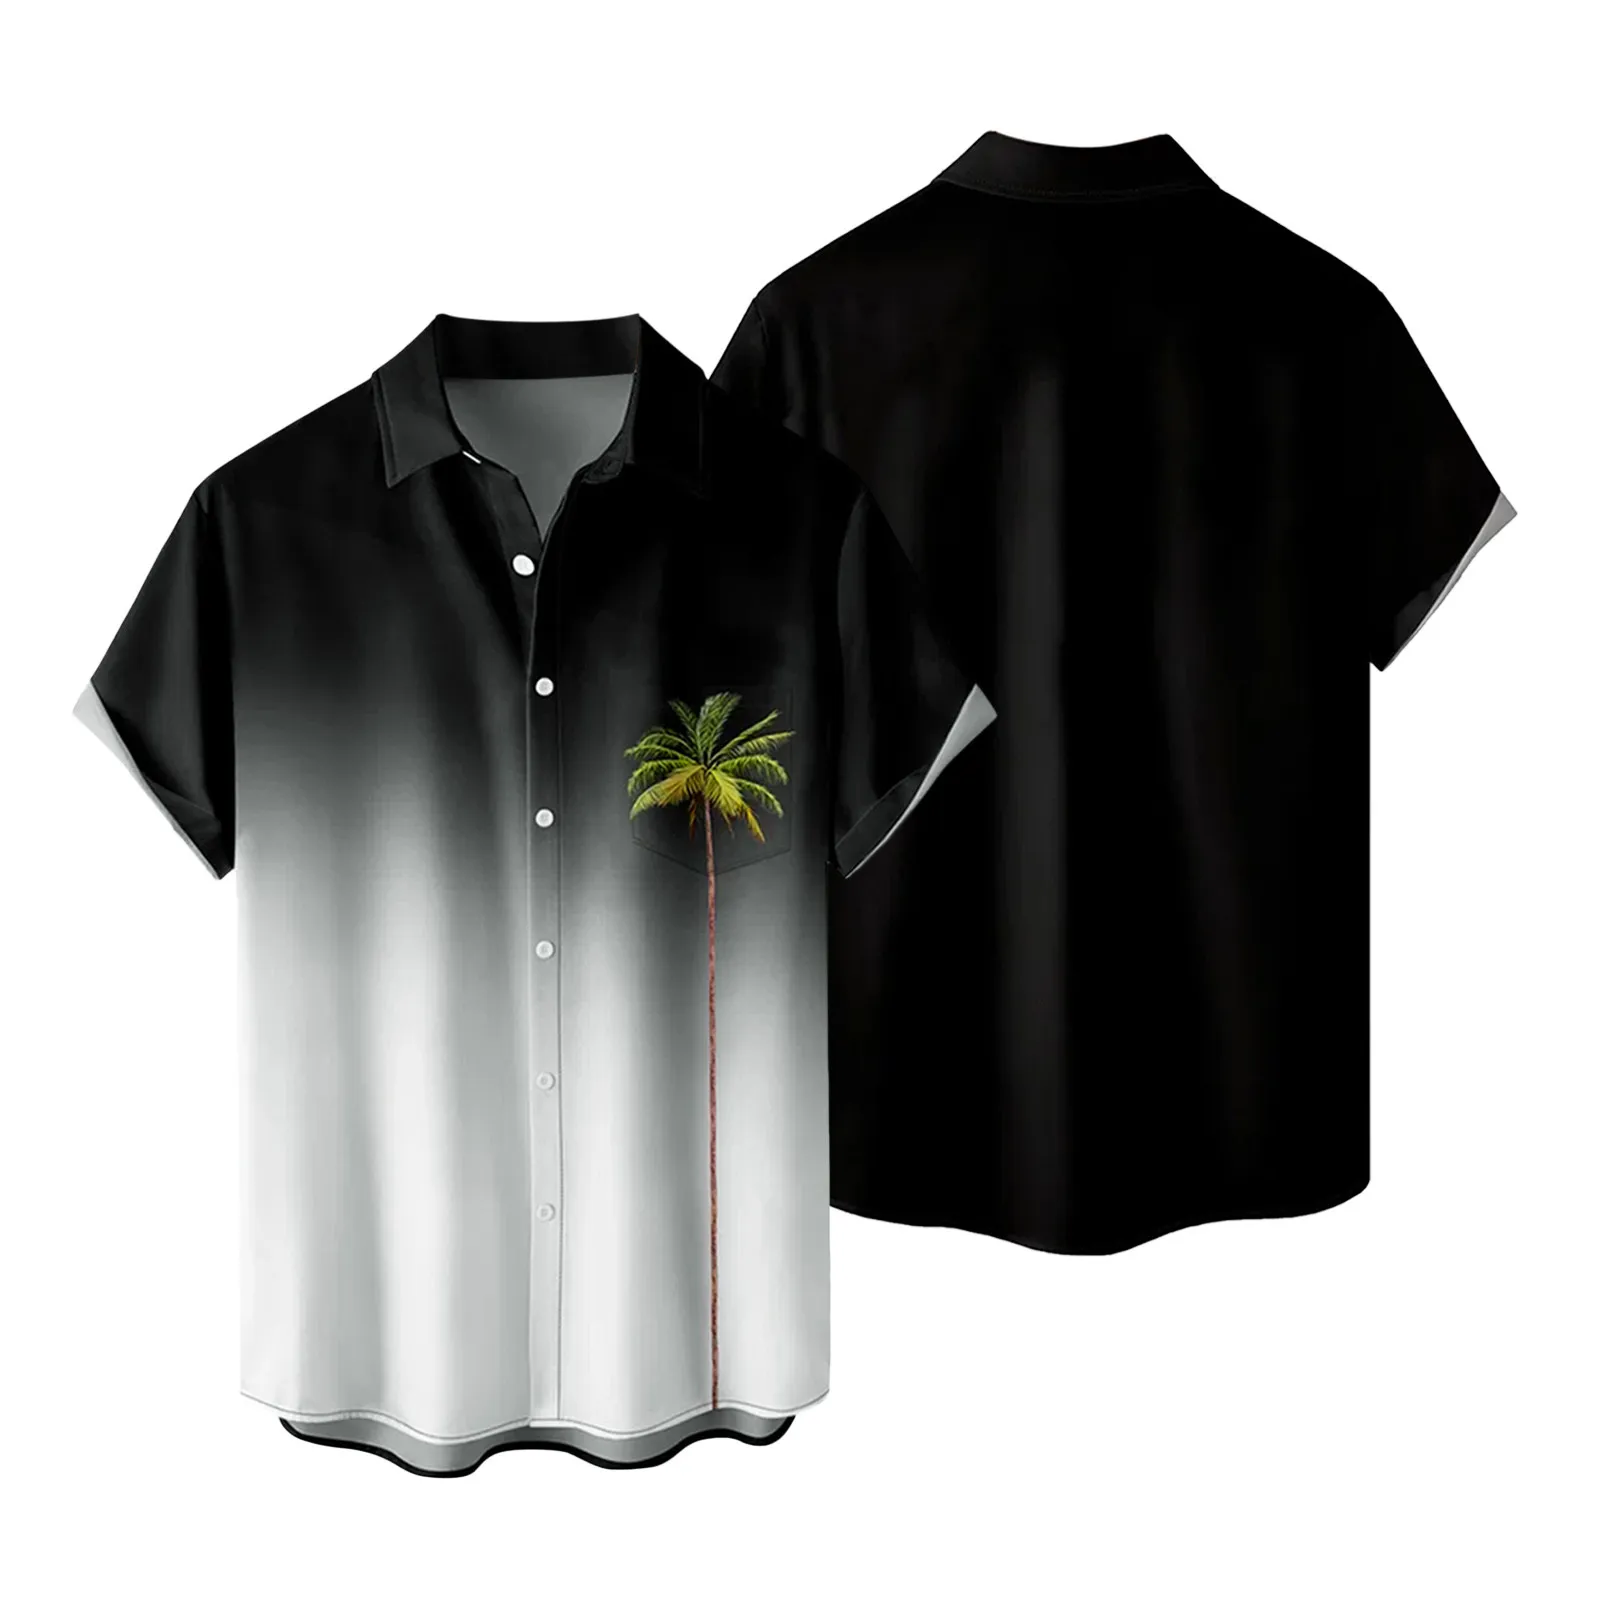 

Рубашка мужская с кокосовым принтом, хлопково-Льняная блузка на пуговицах, с коротким рукавом, с отложным воротником, в пляжном стиле, Гавайский стиль, градиентные цвета